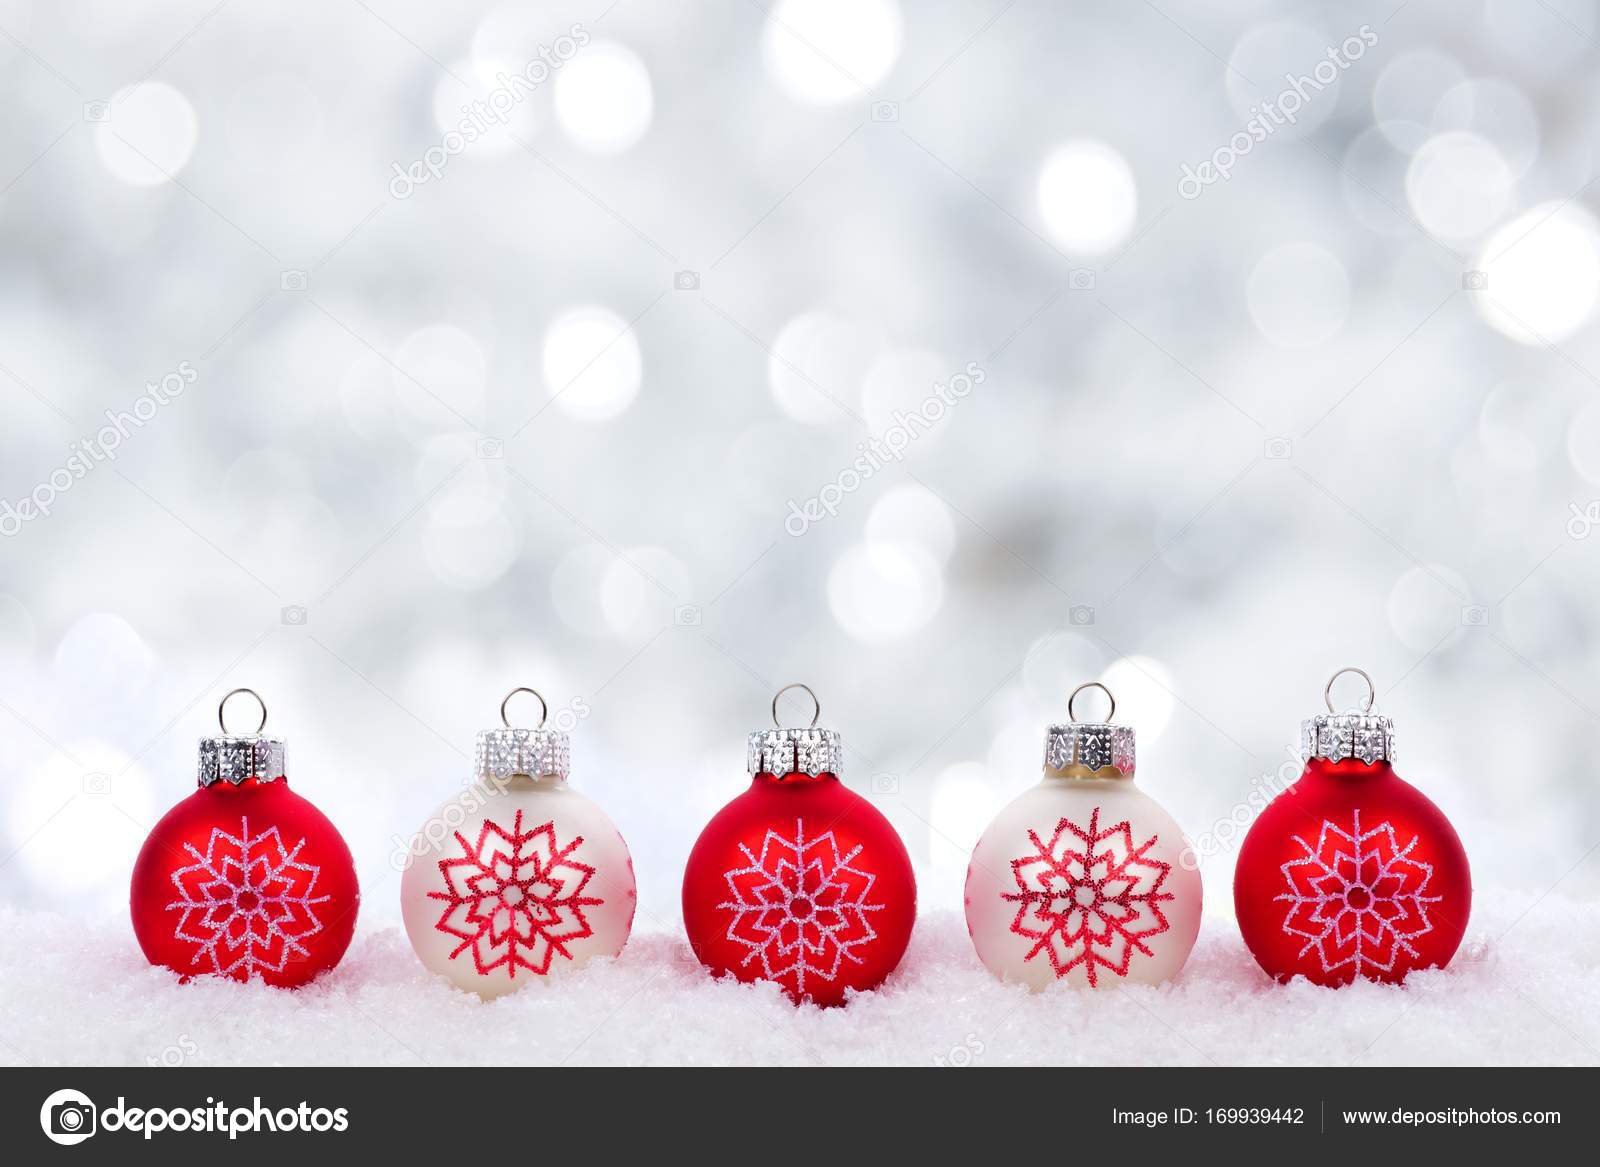 Hình nền Giáng sinh với đèn nhấp nháy và trang trí đỏ trắng sẽ đem lại cảm giác rực rỡ, sống động cho mùa Giáng Sinh của bạn. Hãy cùng chiêm ngưỡng hình ảnh này với sự kết hợp giữa đèn nhấp nháy và trang trí đỏ trắng, tạo nên không khí giáng sinh đầy vui tươi và tươi mới.